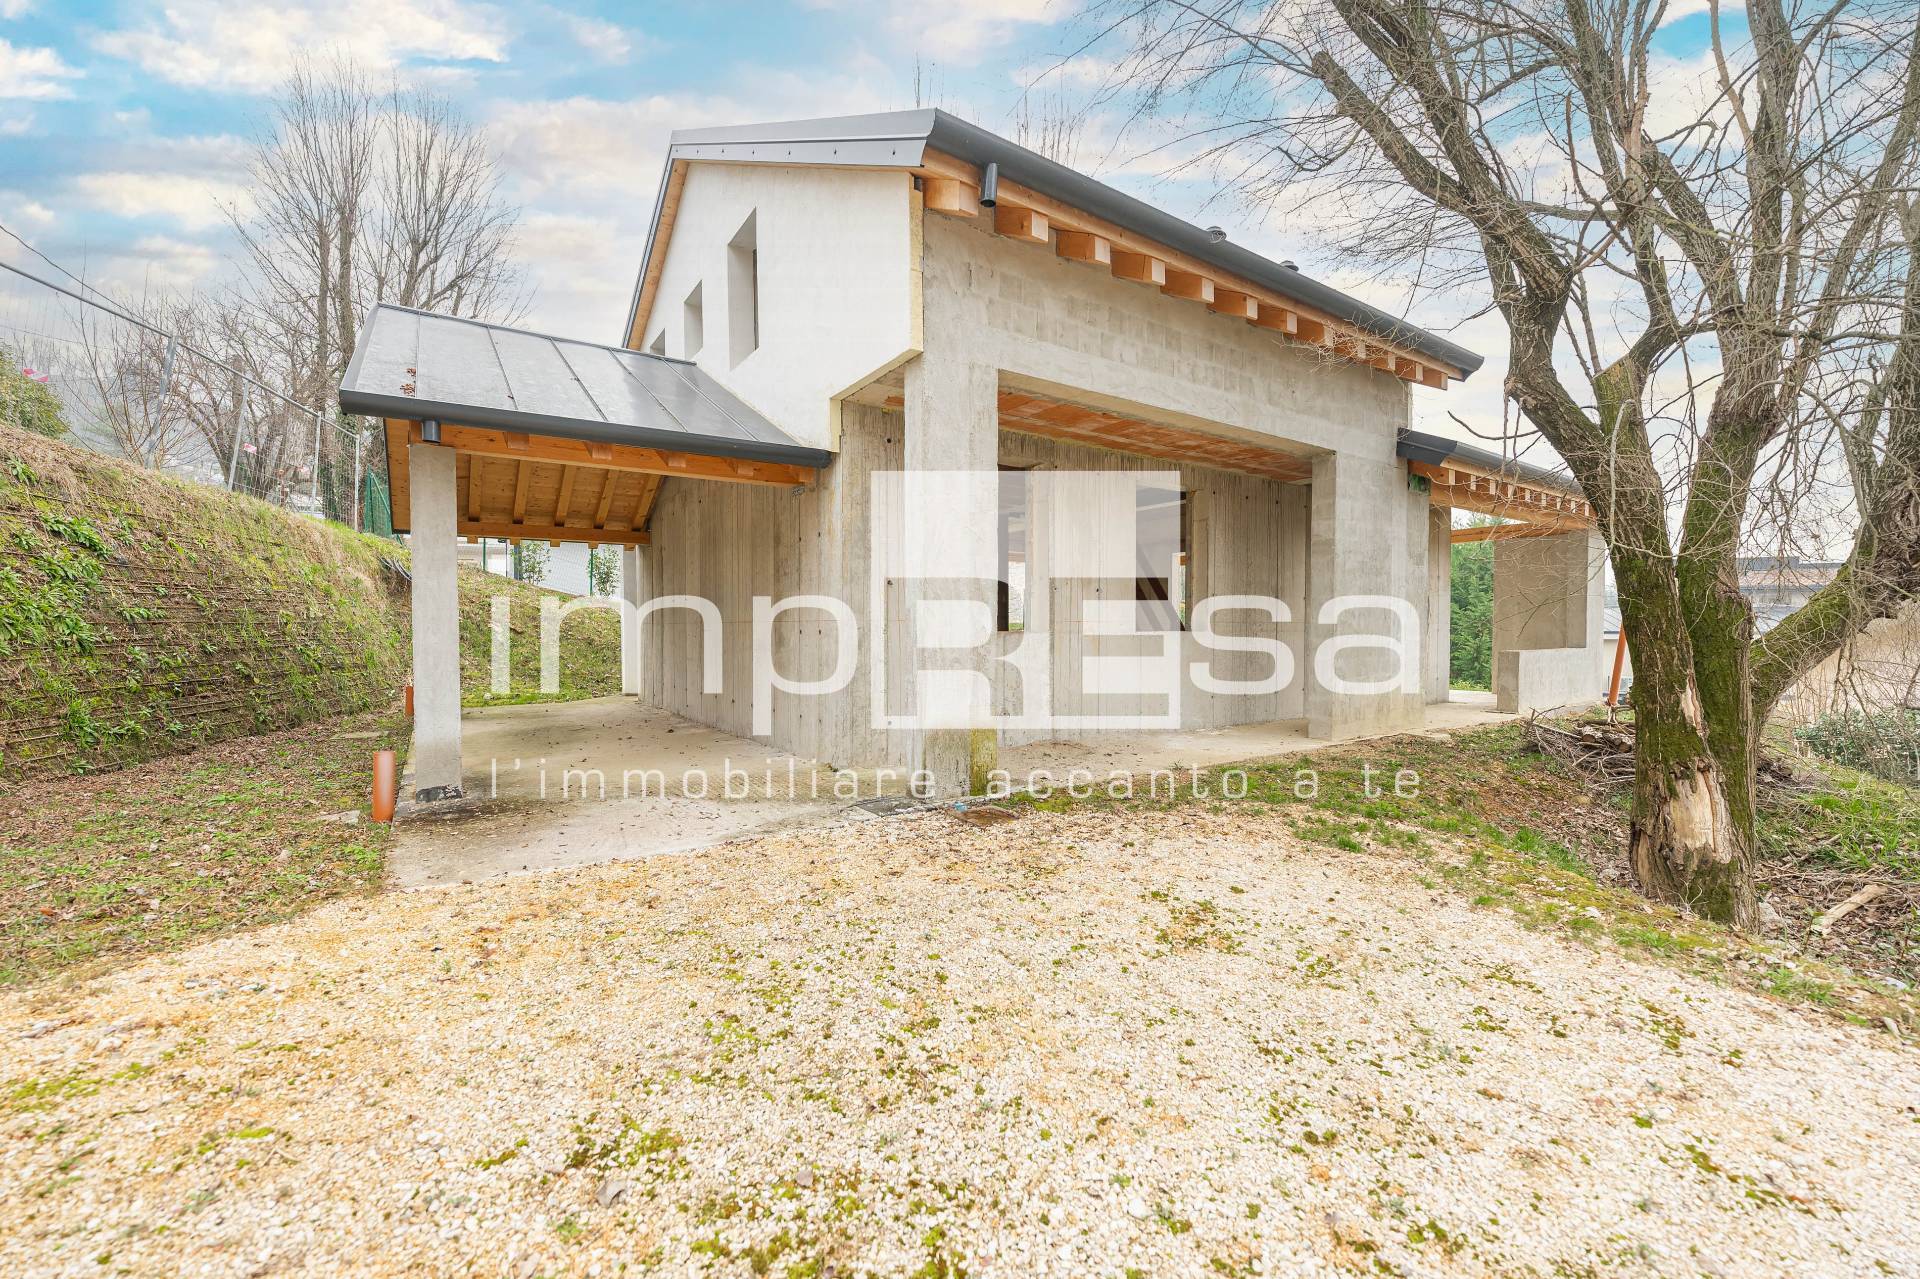 Villa in vendita a Conegliano, 5 locali, prezzo € 290.000 | PortaleAgenzieImmobiliari.it